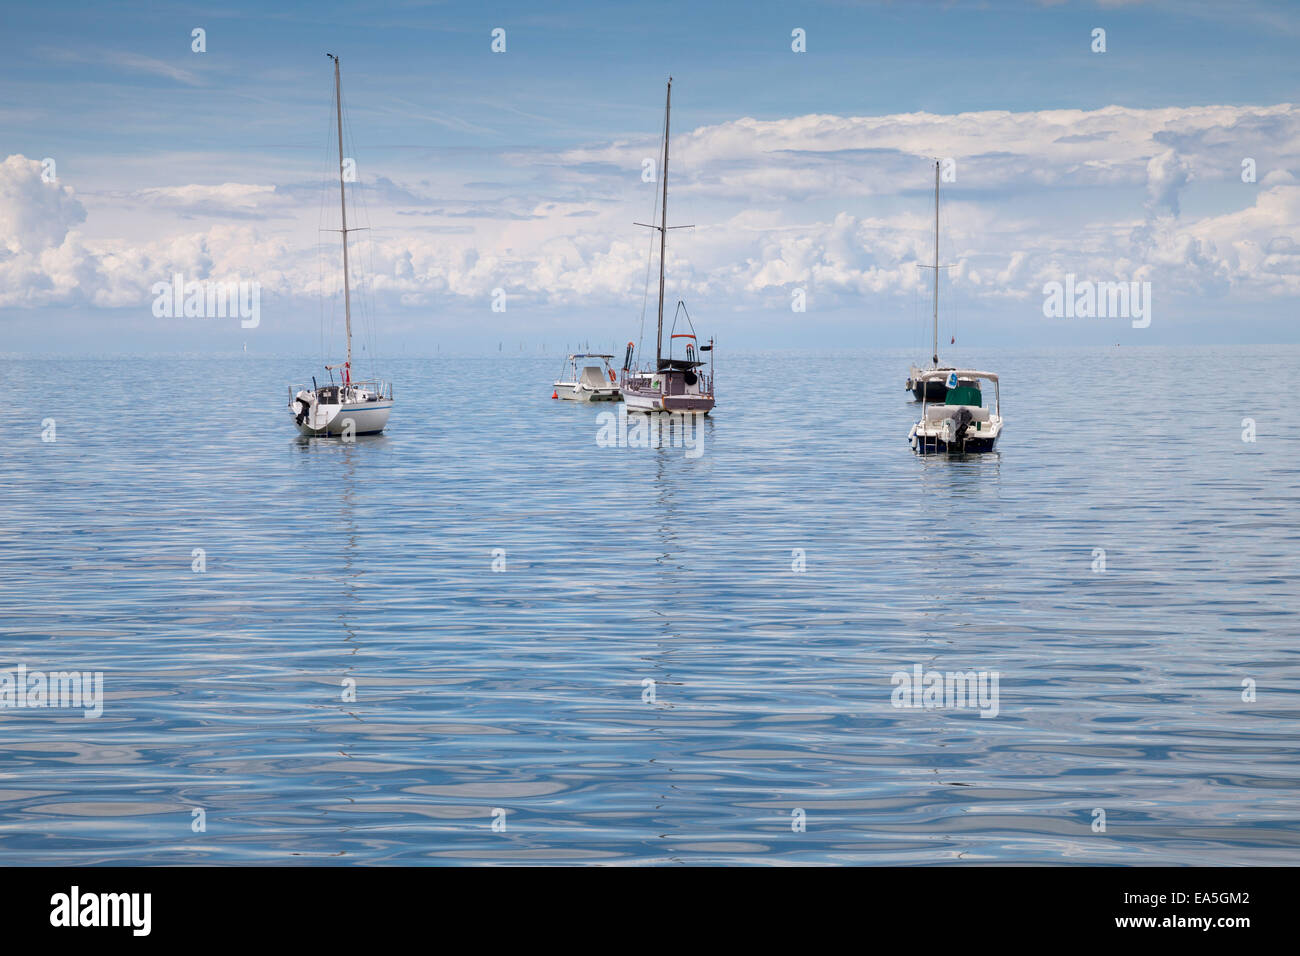 La Slovenia, Istria, Koper, barche sul Mare Adriatico Foto Stock